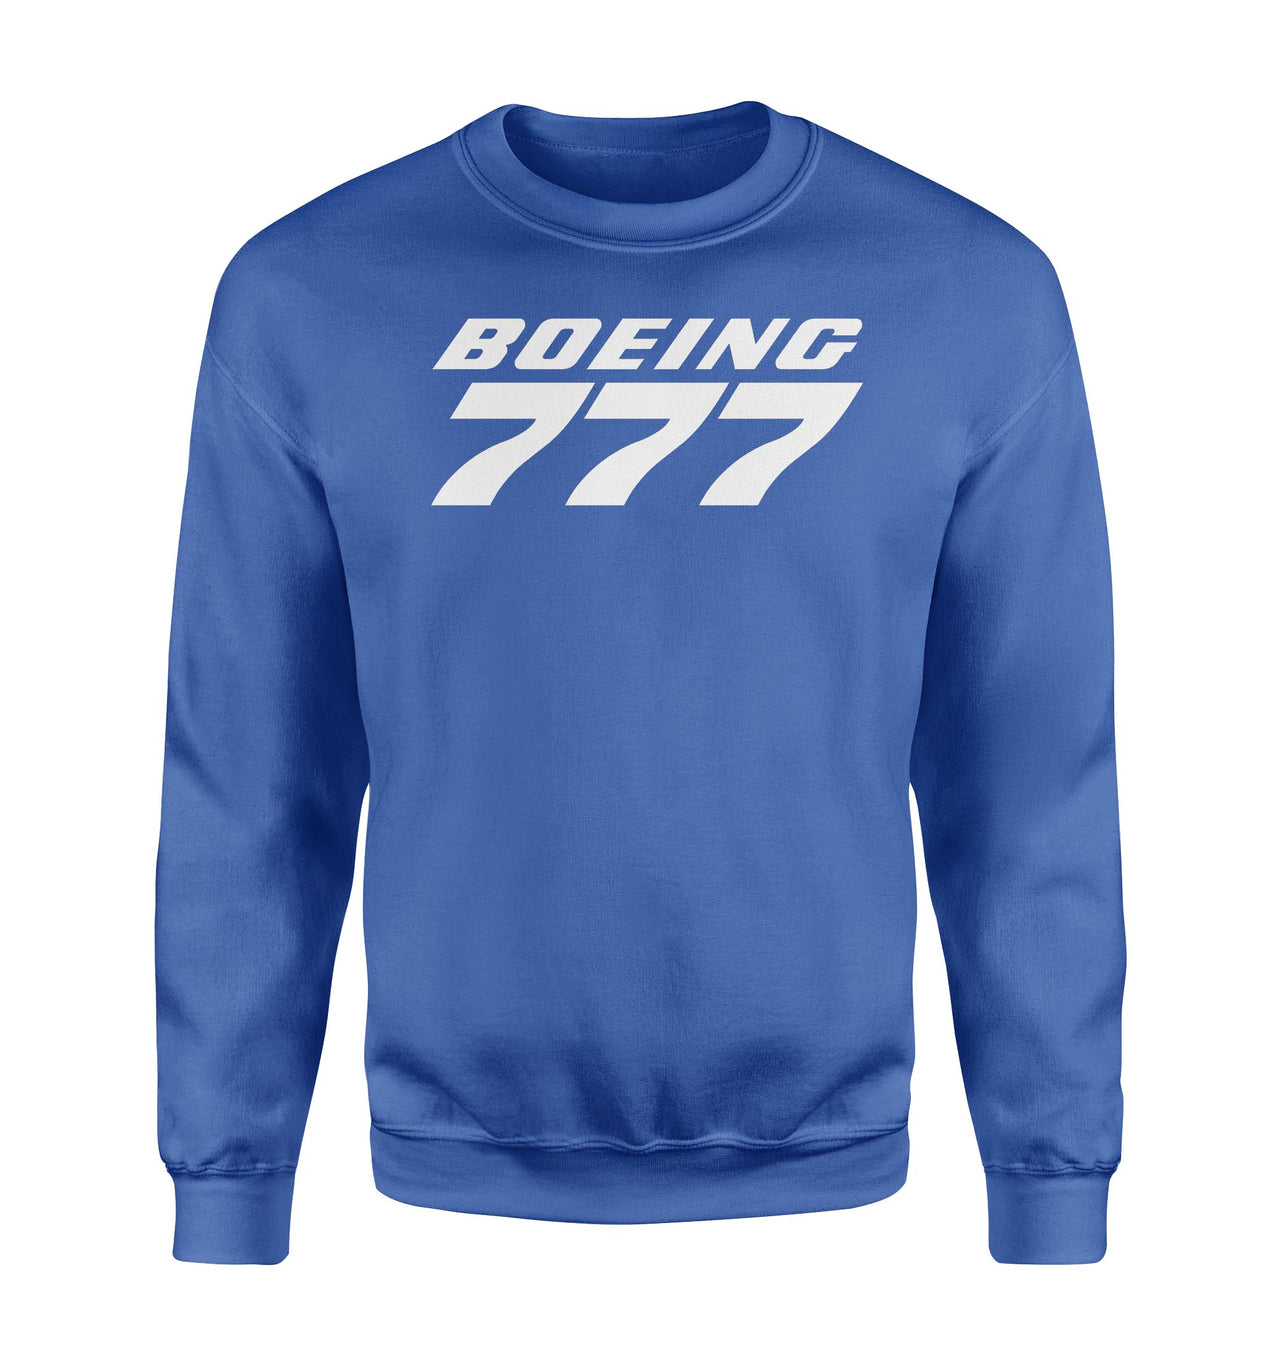 Boeing 777 & Text Designed Sweatshirts